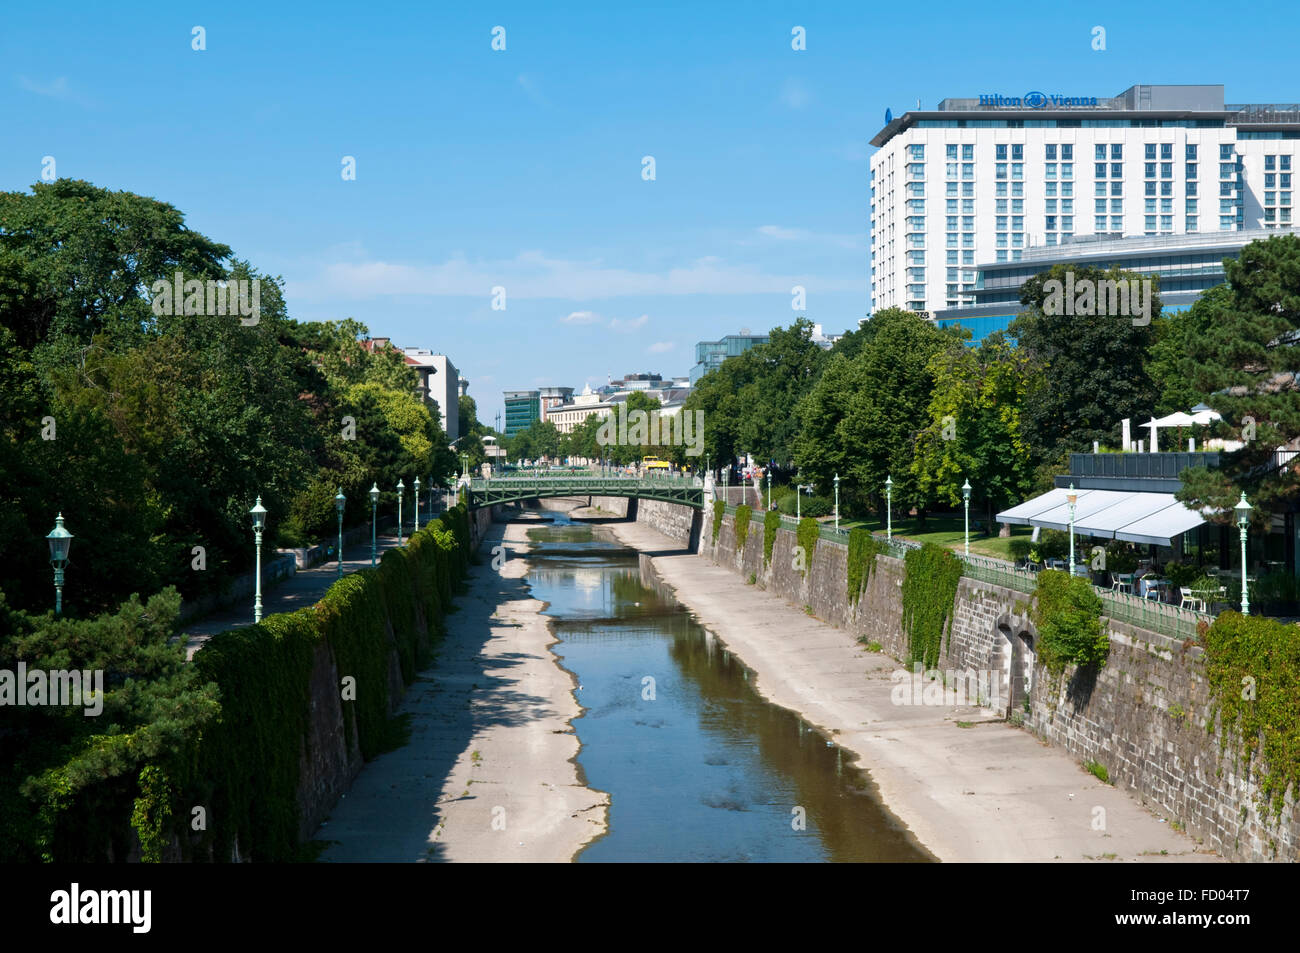 Afficher le long de la rivière Wienfluss longeant le Stadtpark de Vienne, Autriche Banque D'Images